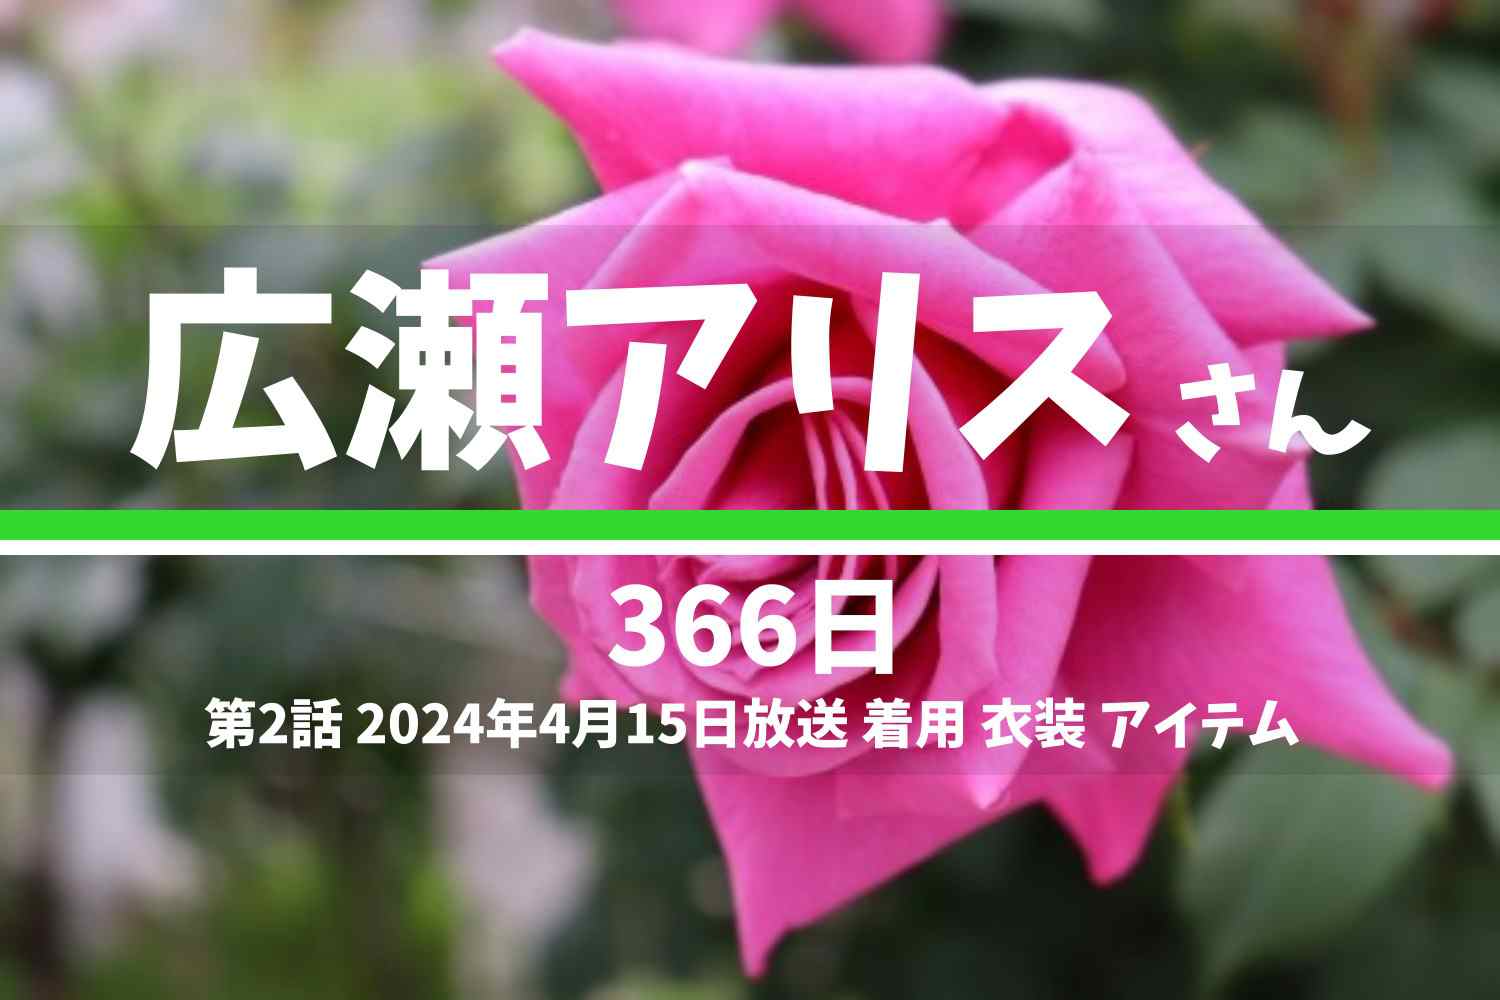 366日 広瀬アリスさん テレビドラマ 衣装 2024年4月15日放送